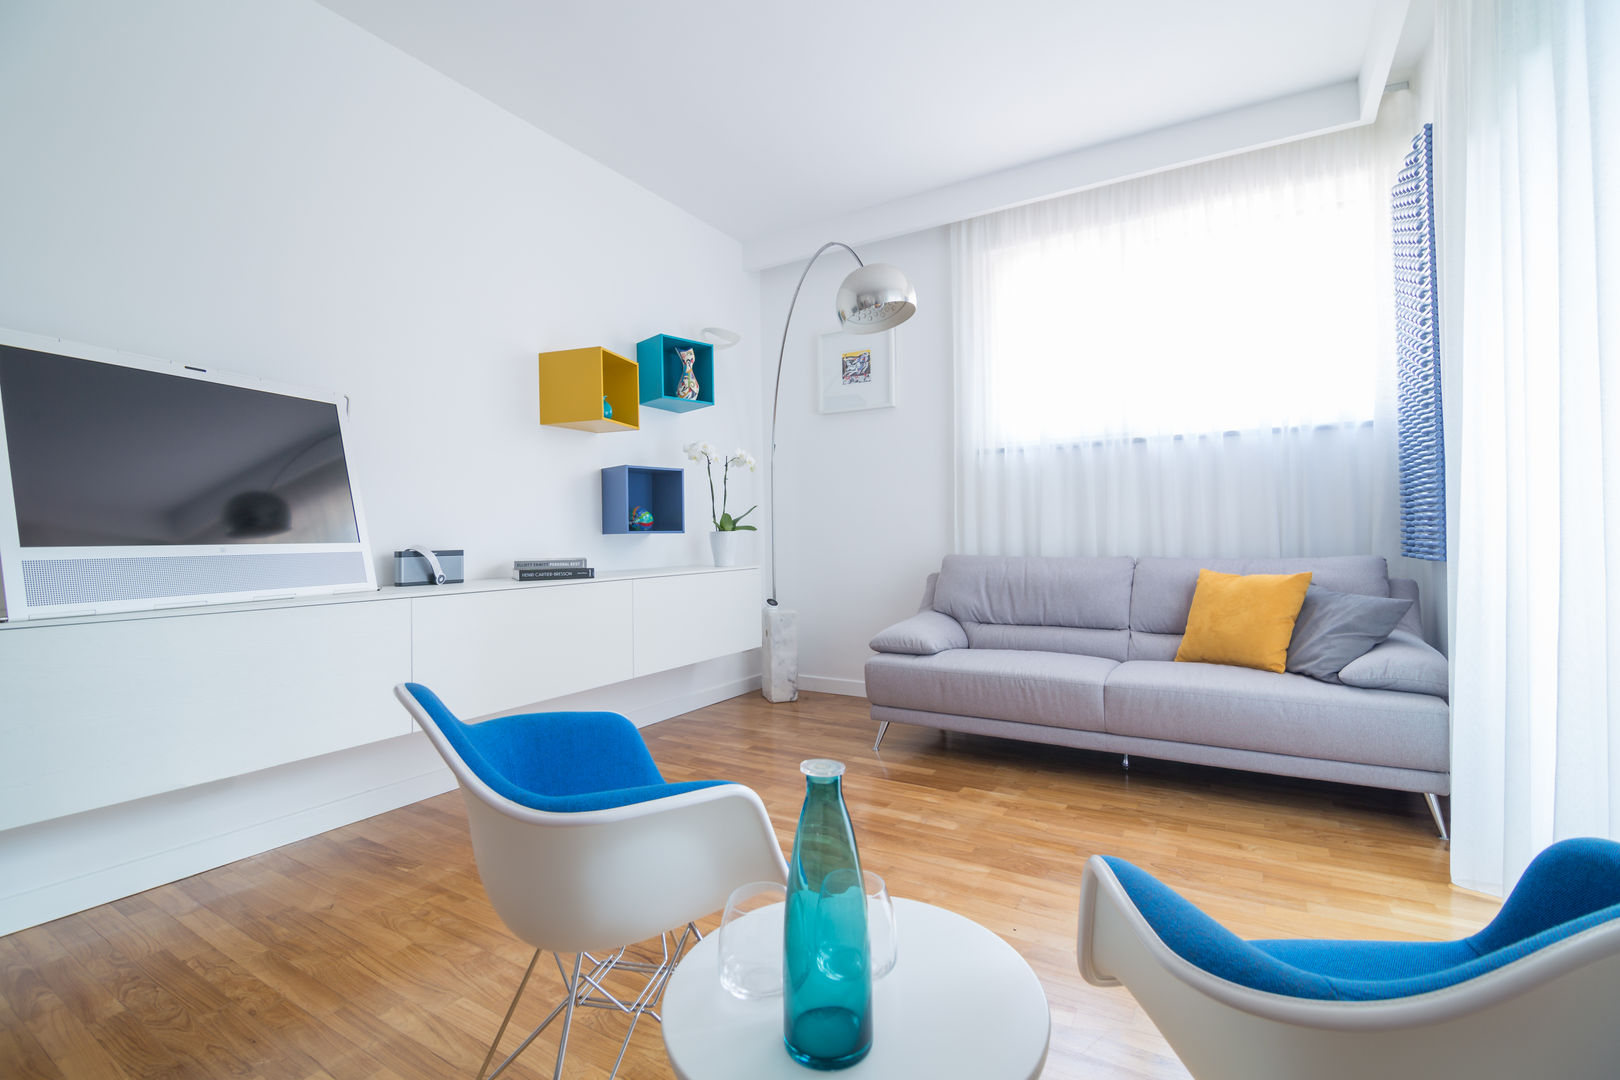 Appartamento C&F, Marcella Pane Marcella Pane Livings modernos: Ideas, imágenes y decoración